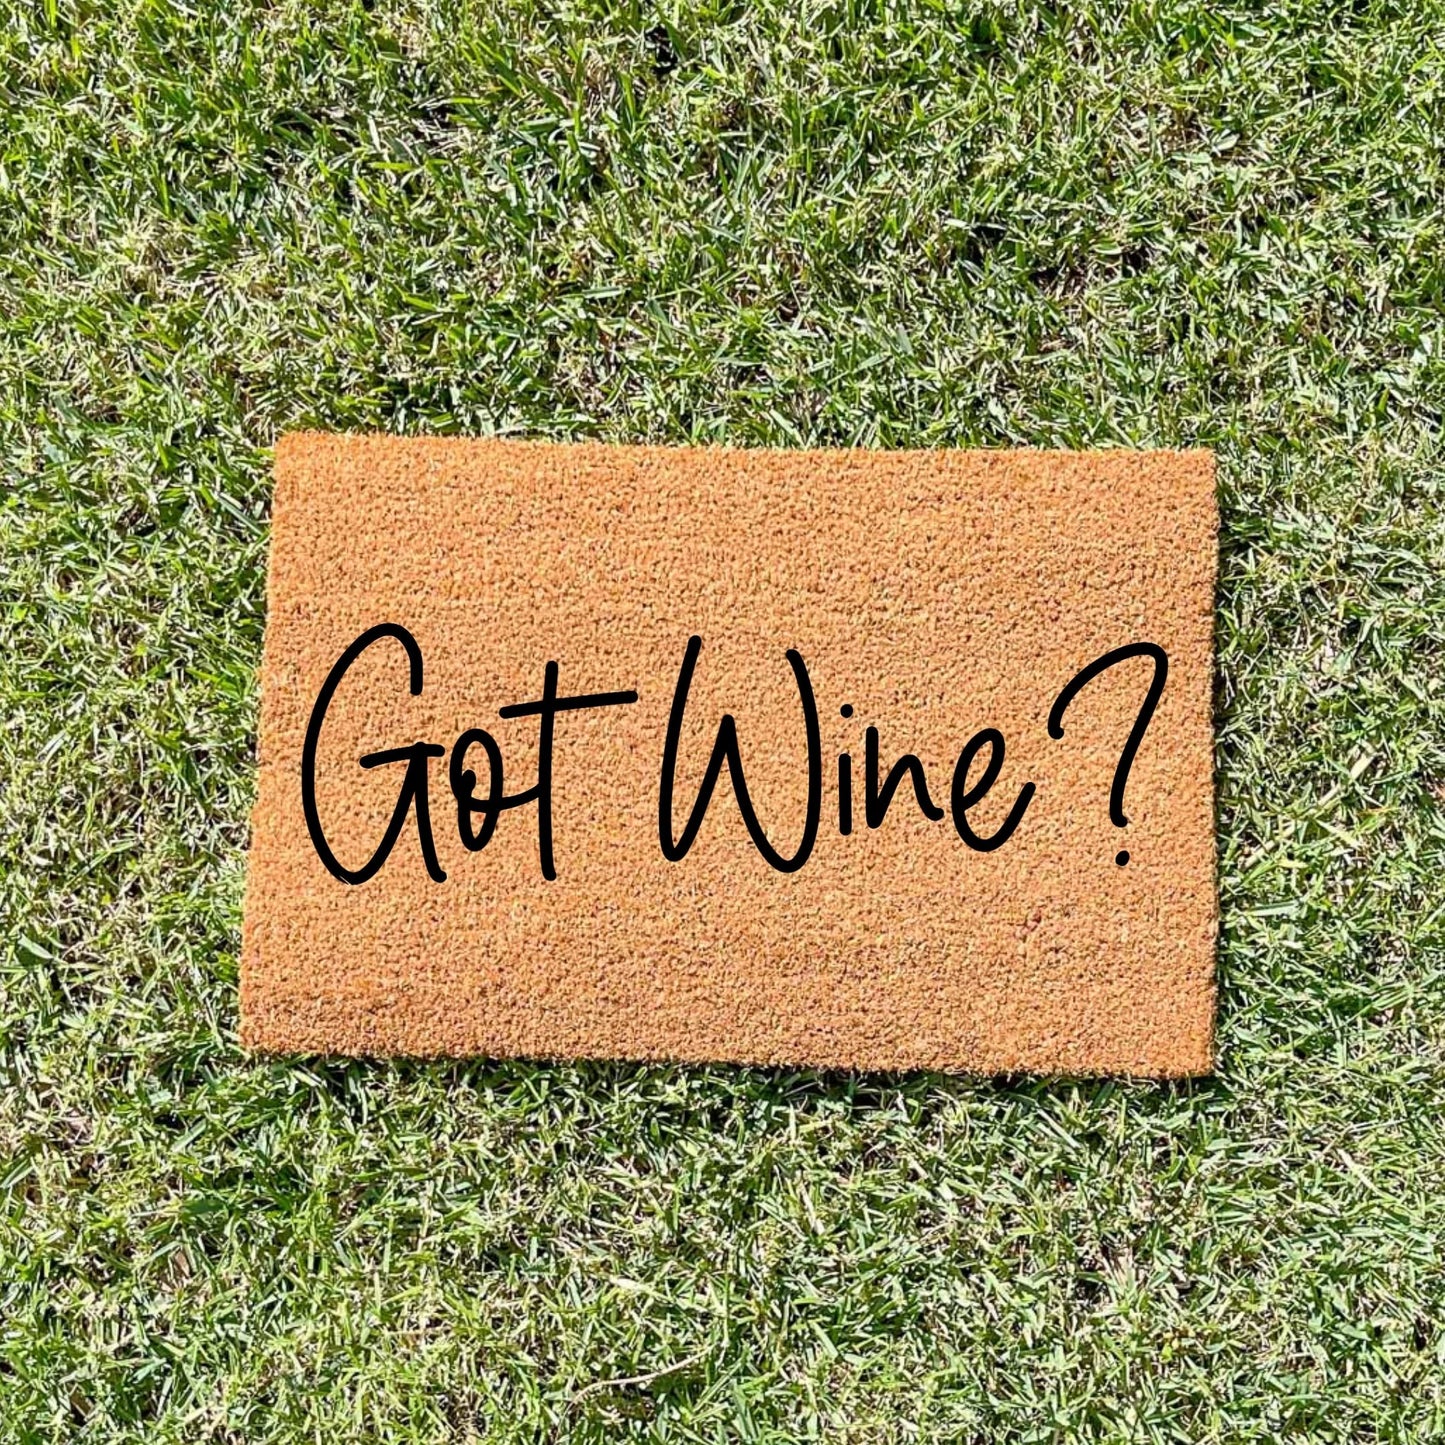 Got wine? doormat, unique doormat, custom doormat, personalised doormat